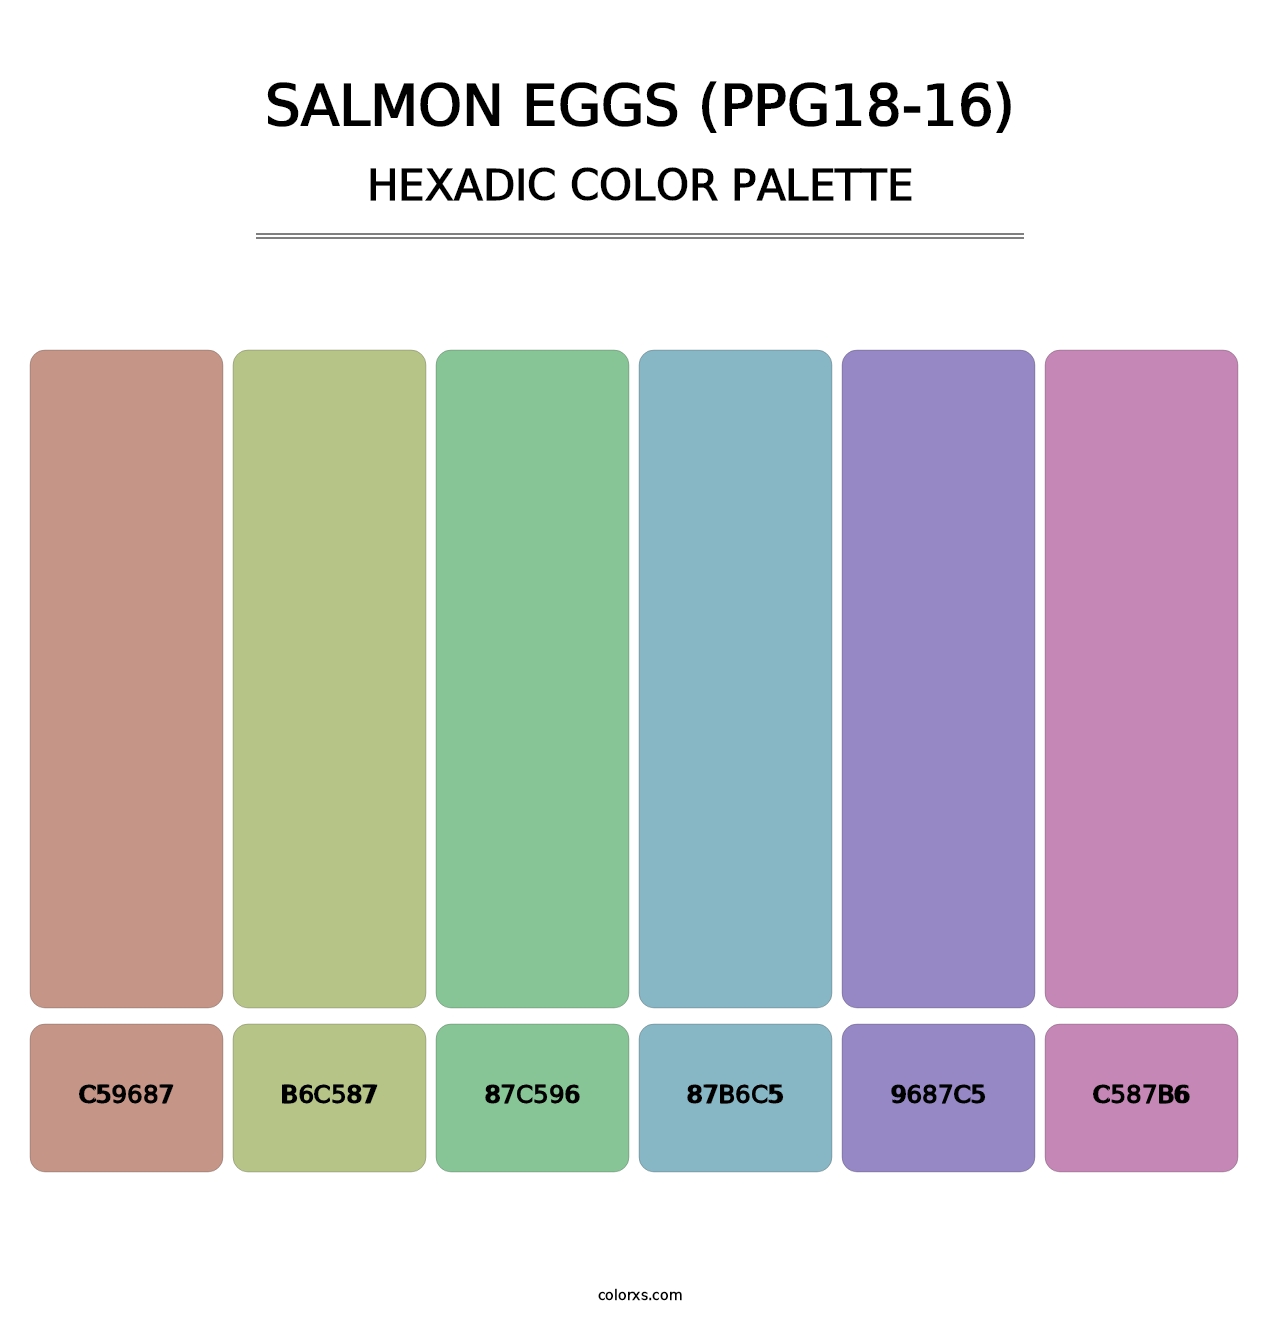 Salmon Eggs (PPG18-16) - Hexadic Color Palette